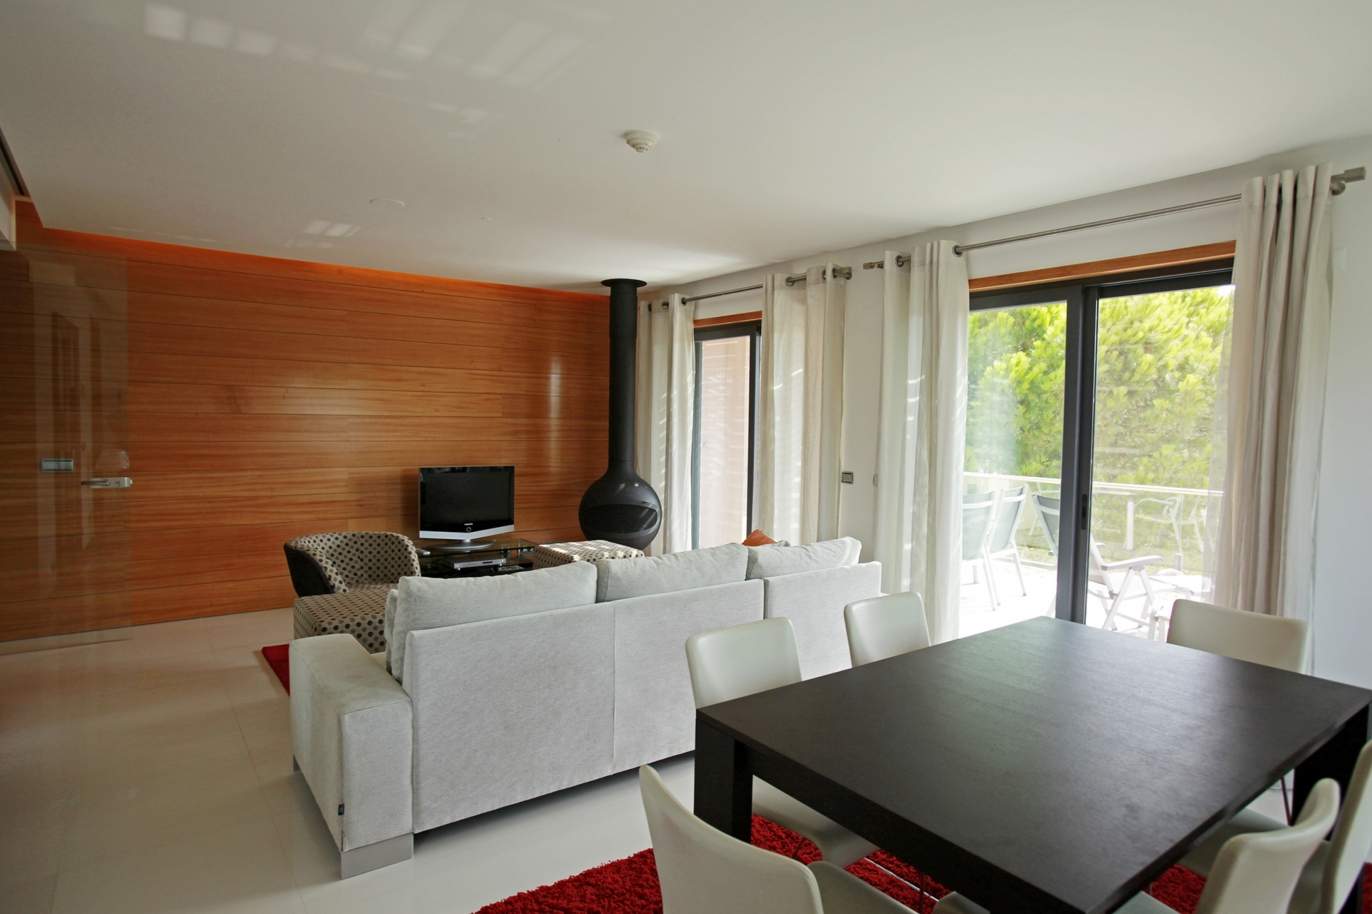 Apartamento para venda com vista golfe em Vale do Lobo, Algarve_120334